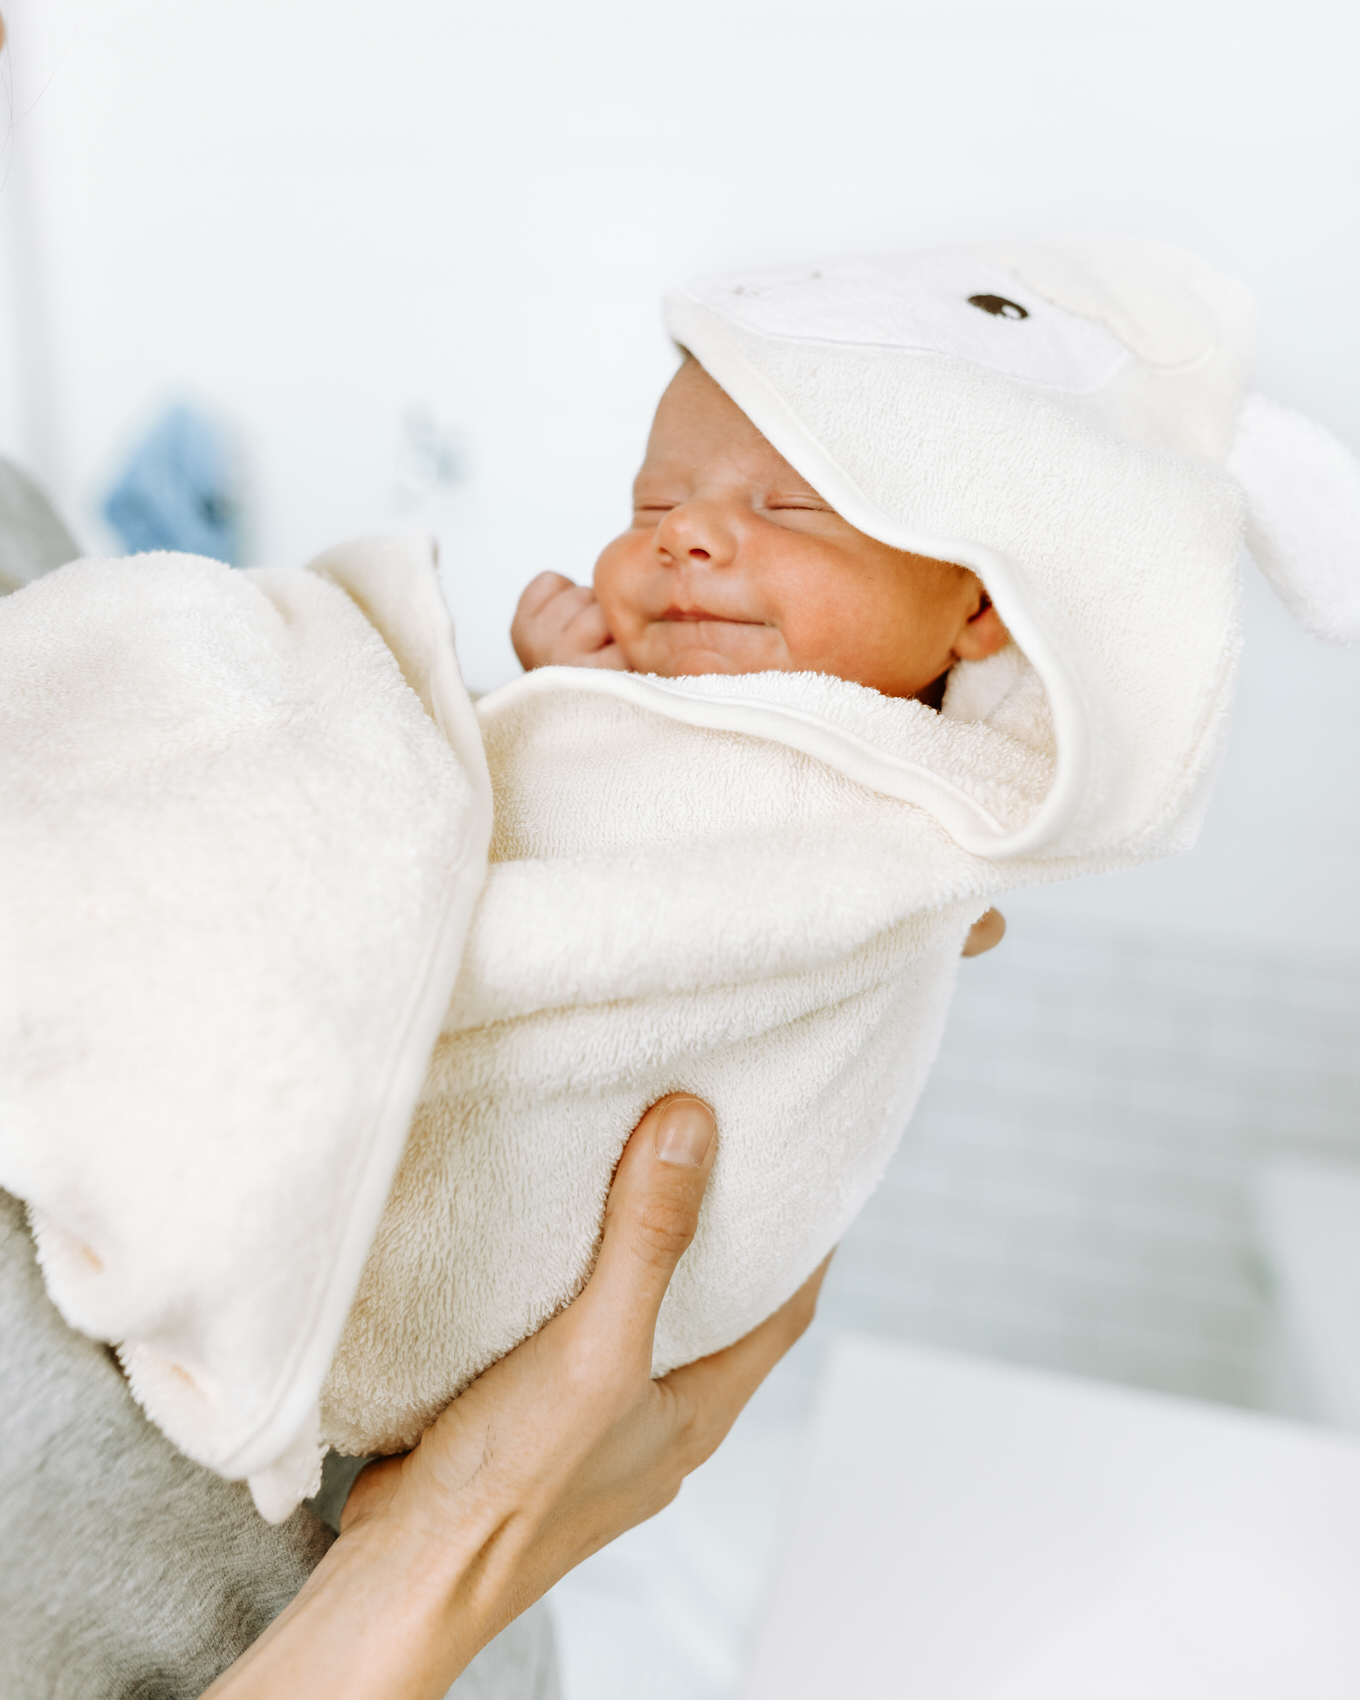 precious baby in bath towel